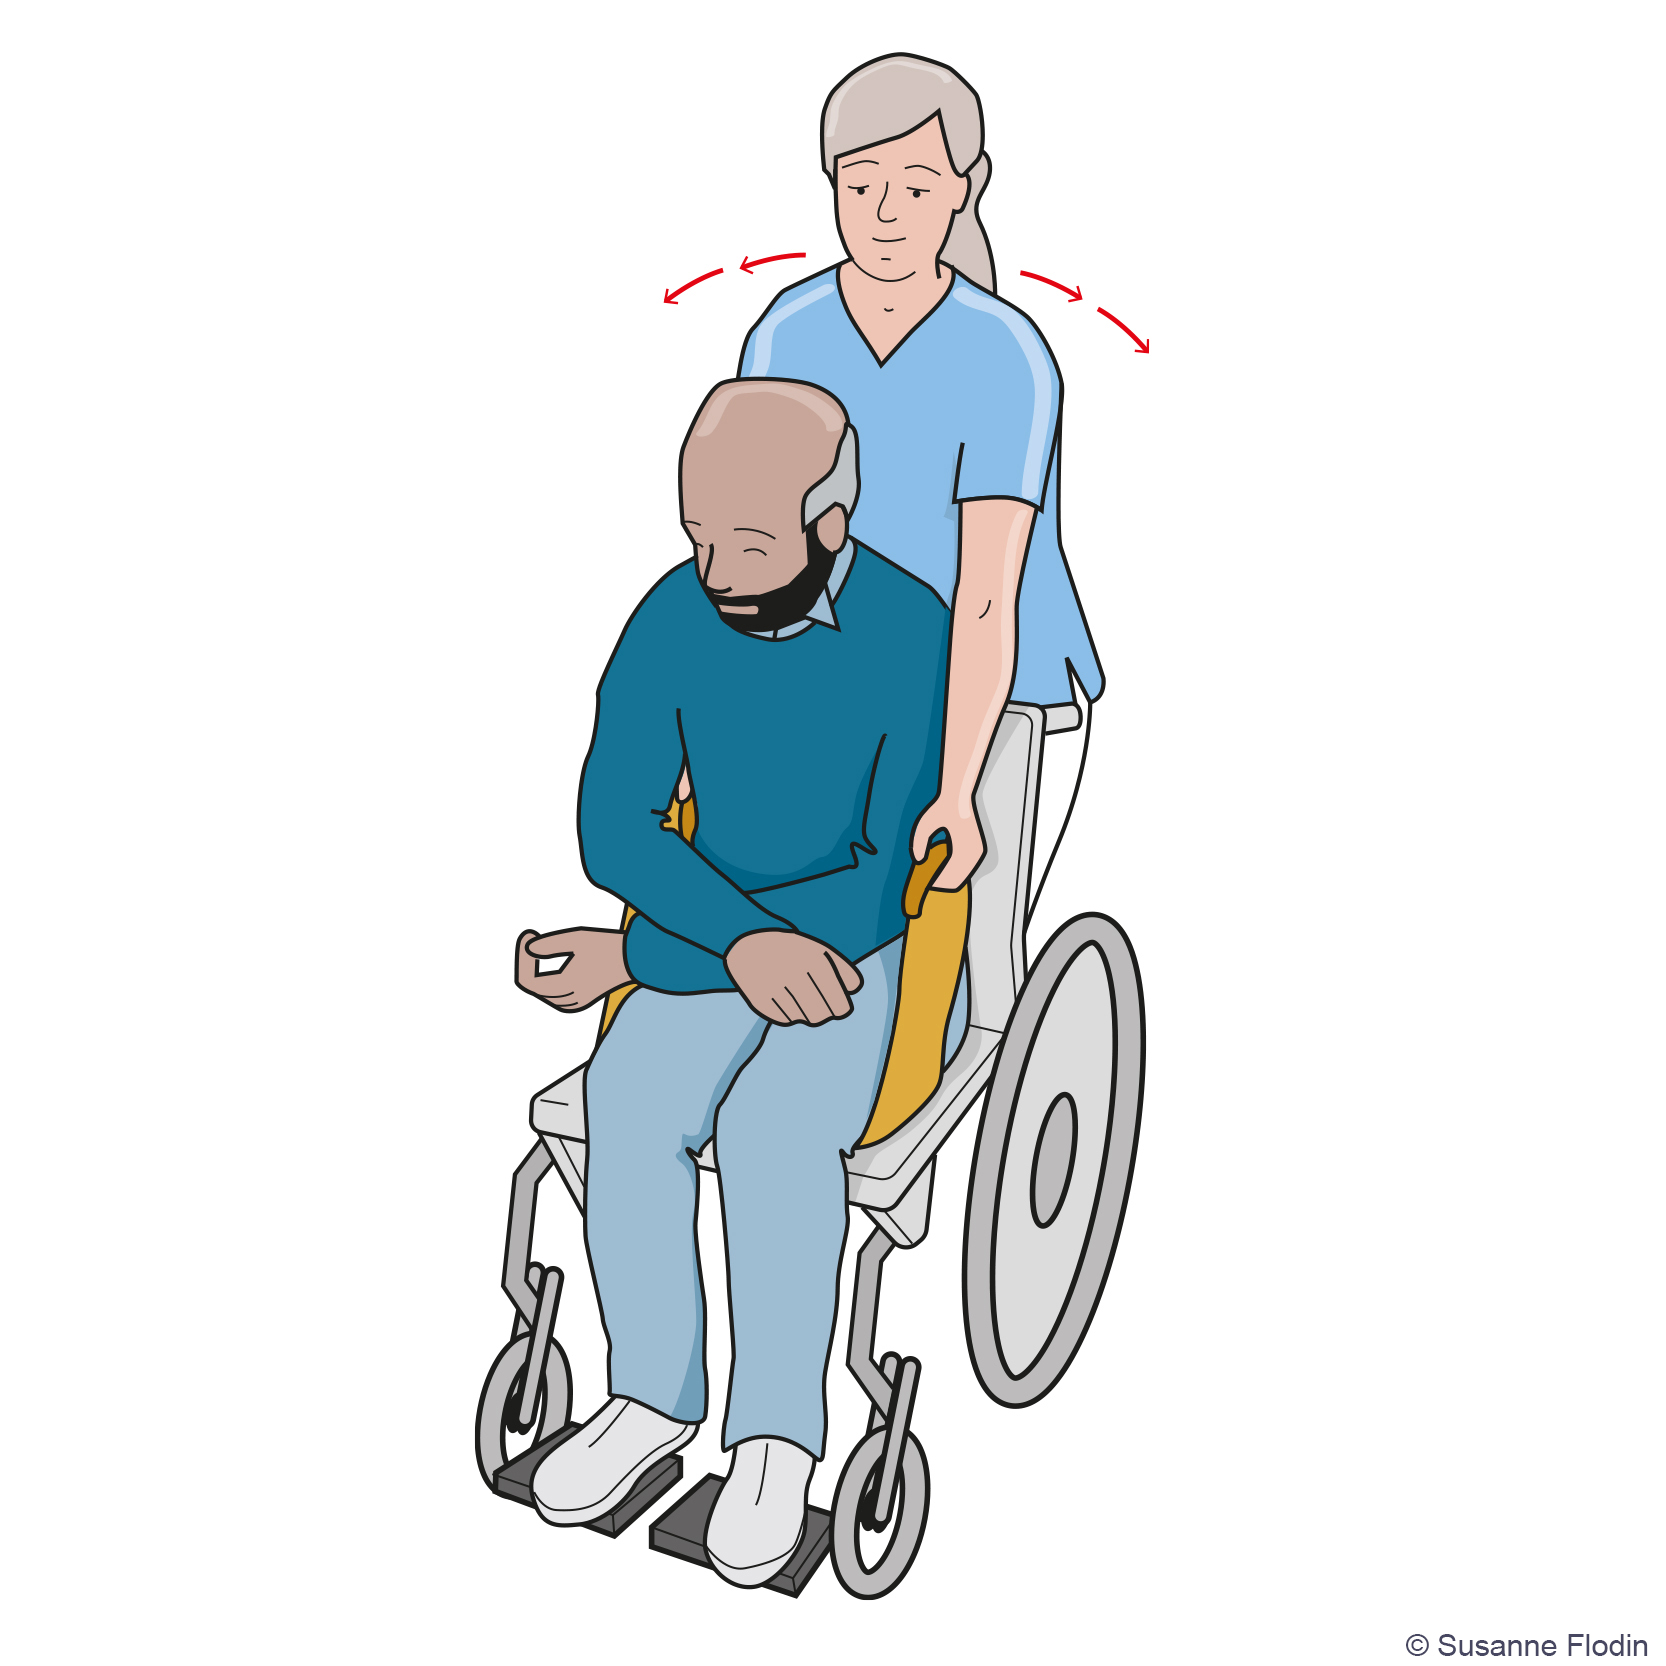 Bild som beskriver hur en vårdpersonal hjälper en patient längre bak i rullstolen med hjälp av ett draglakan och genom att flytta sig från sida till sida och samtidigt dra bakåt. 